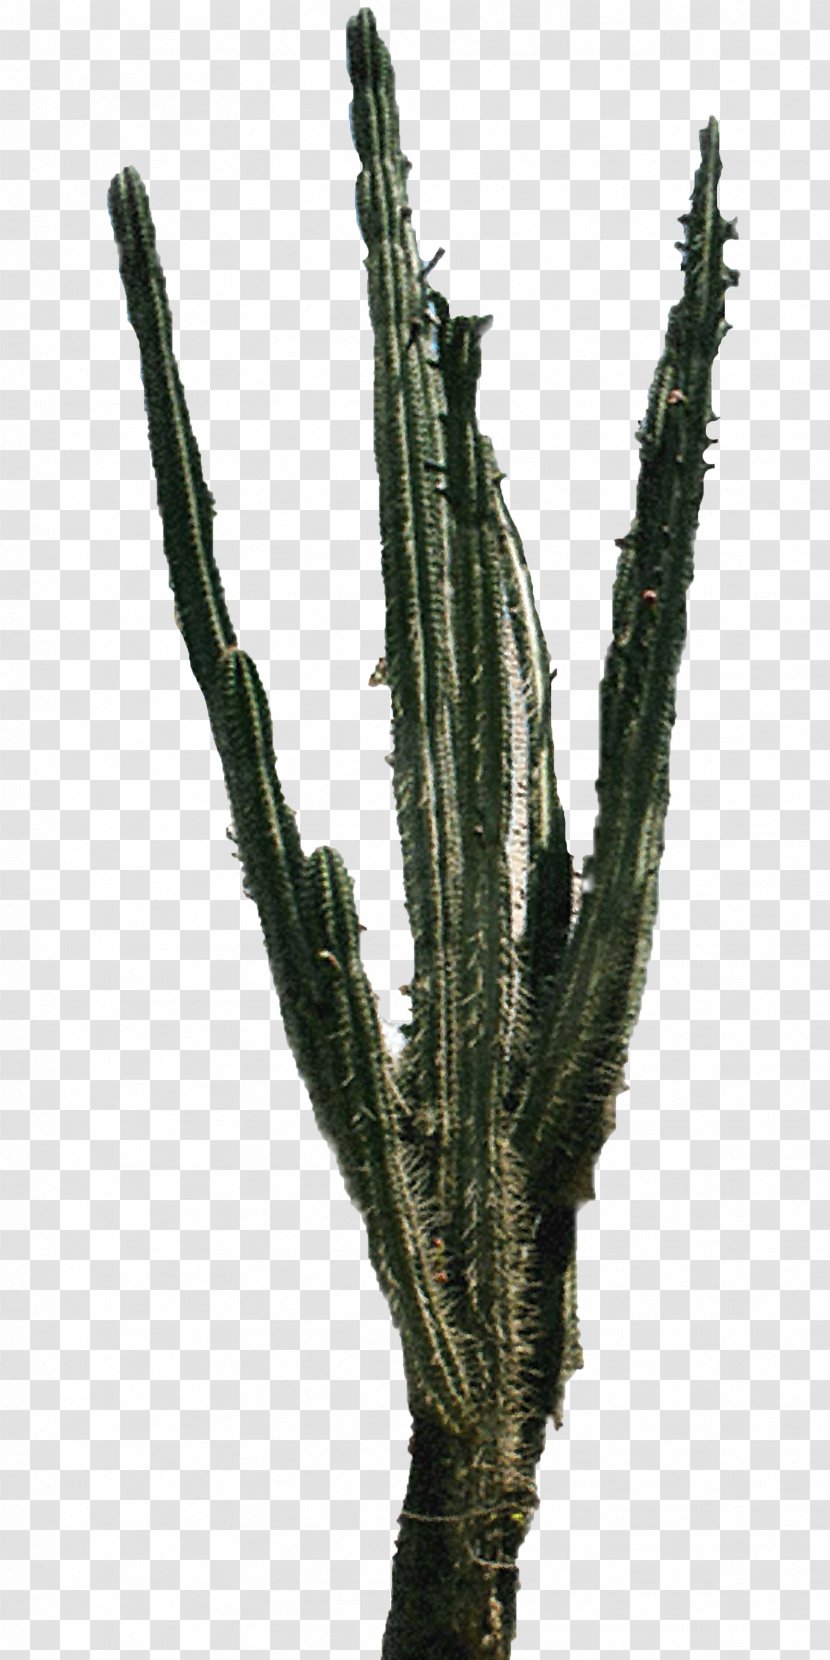 Cactaceae - Parodia Magnifica - Cactus 2 Transparent PNG